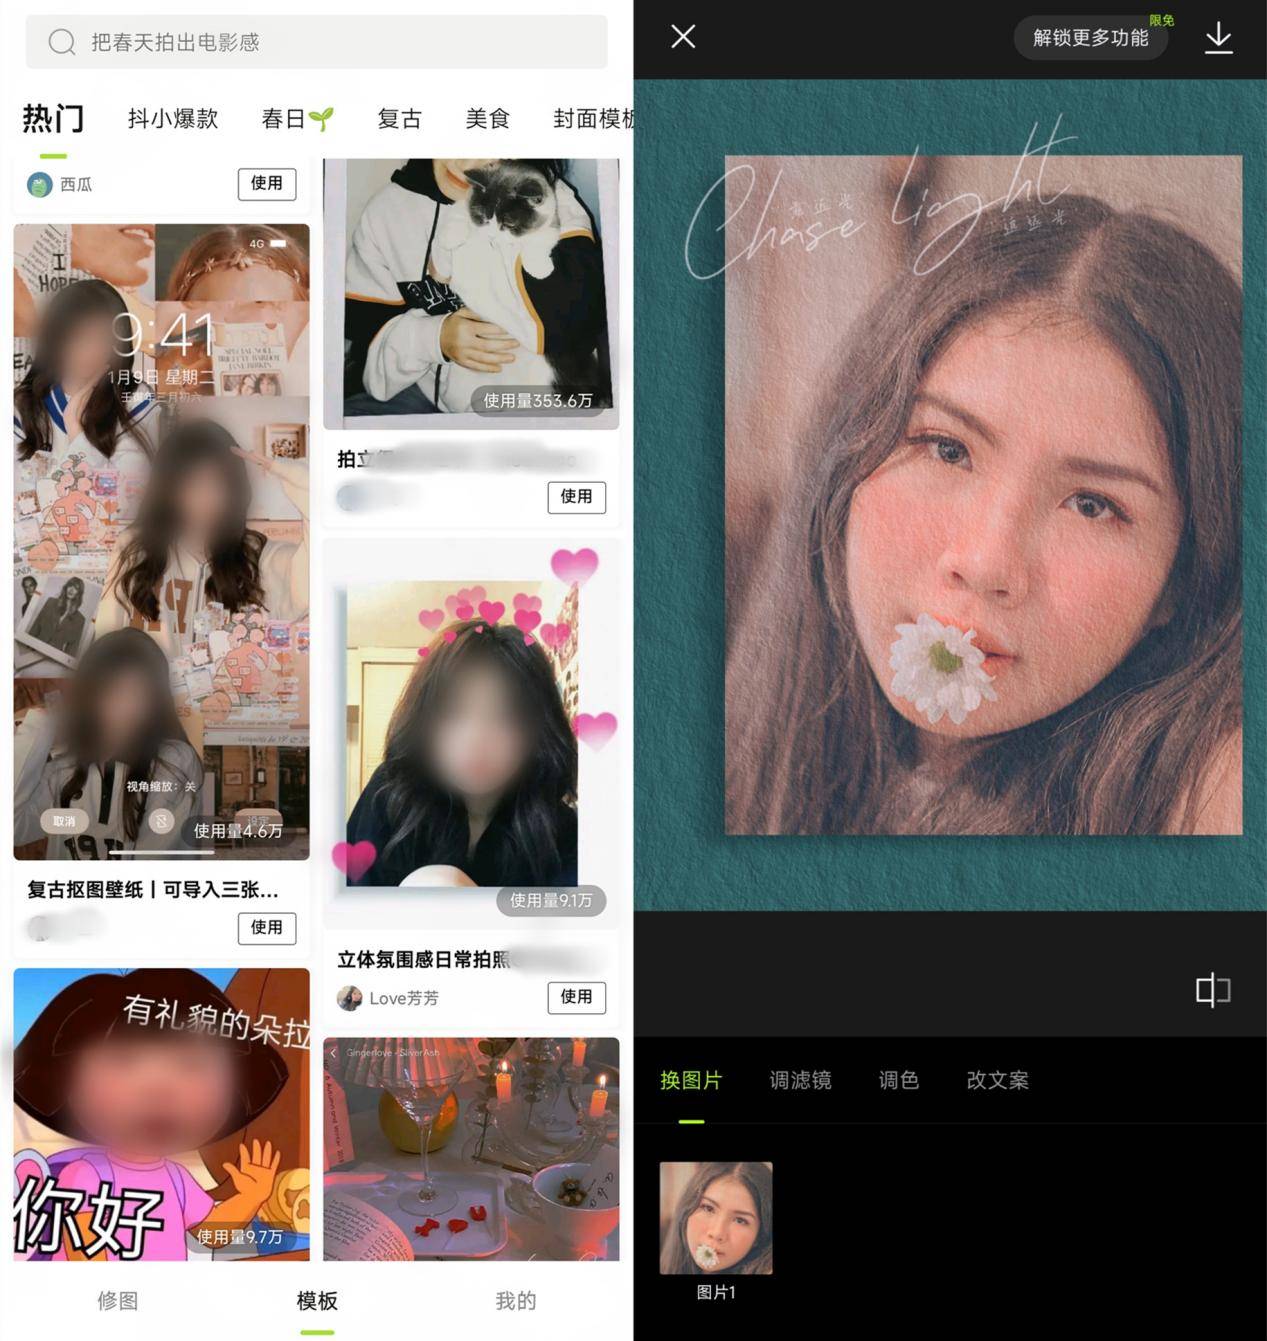 Affinity Photo Mac(好用的图片编辑软件)v1.10.4中文免激活版 - 哔哩哔哩